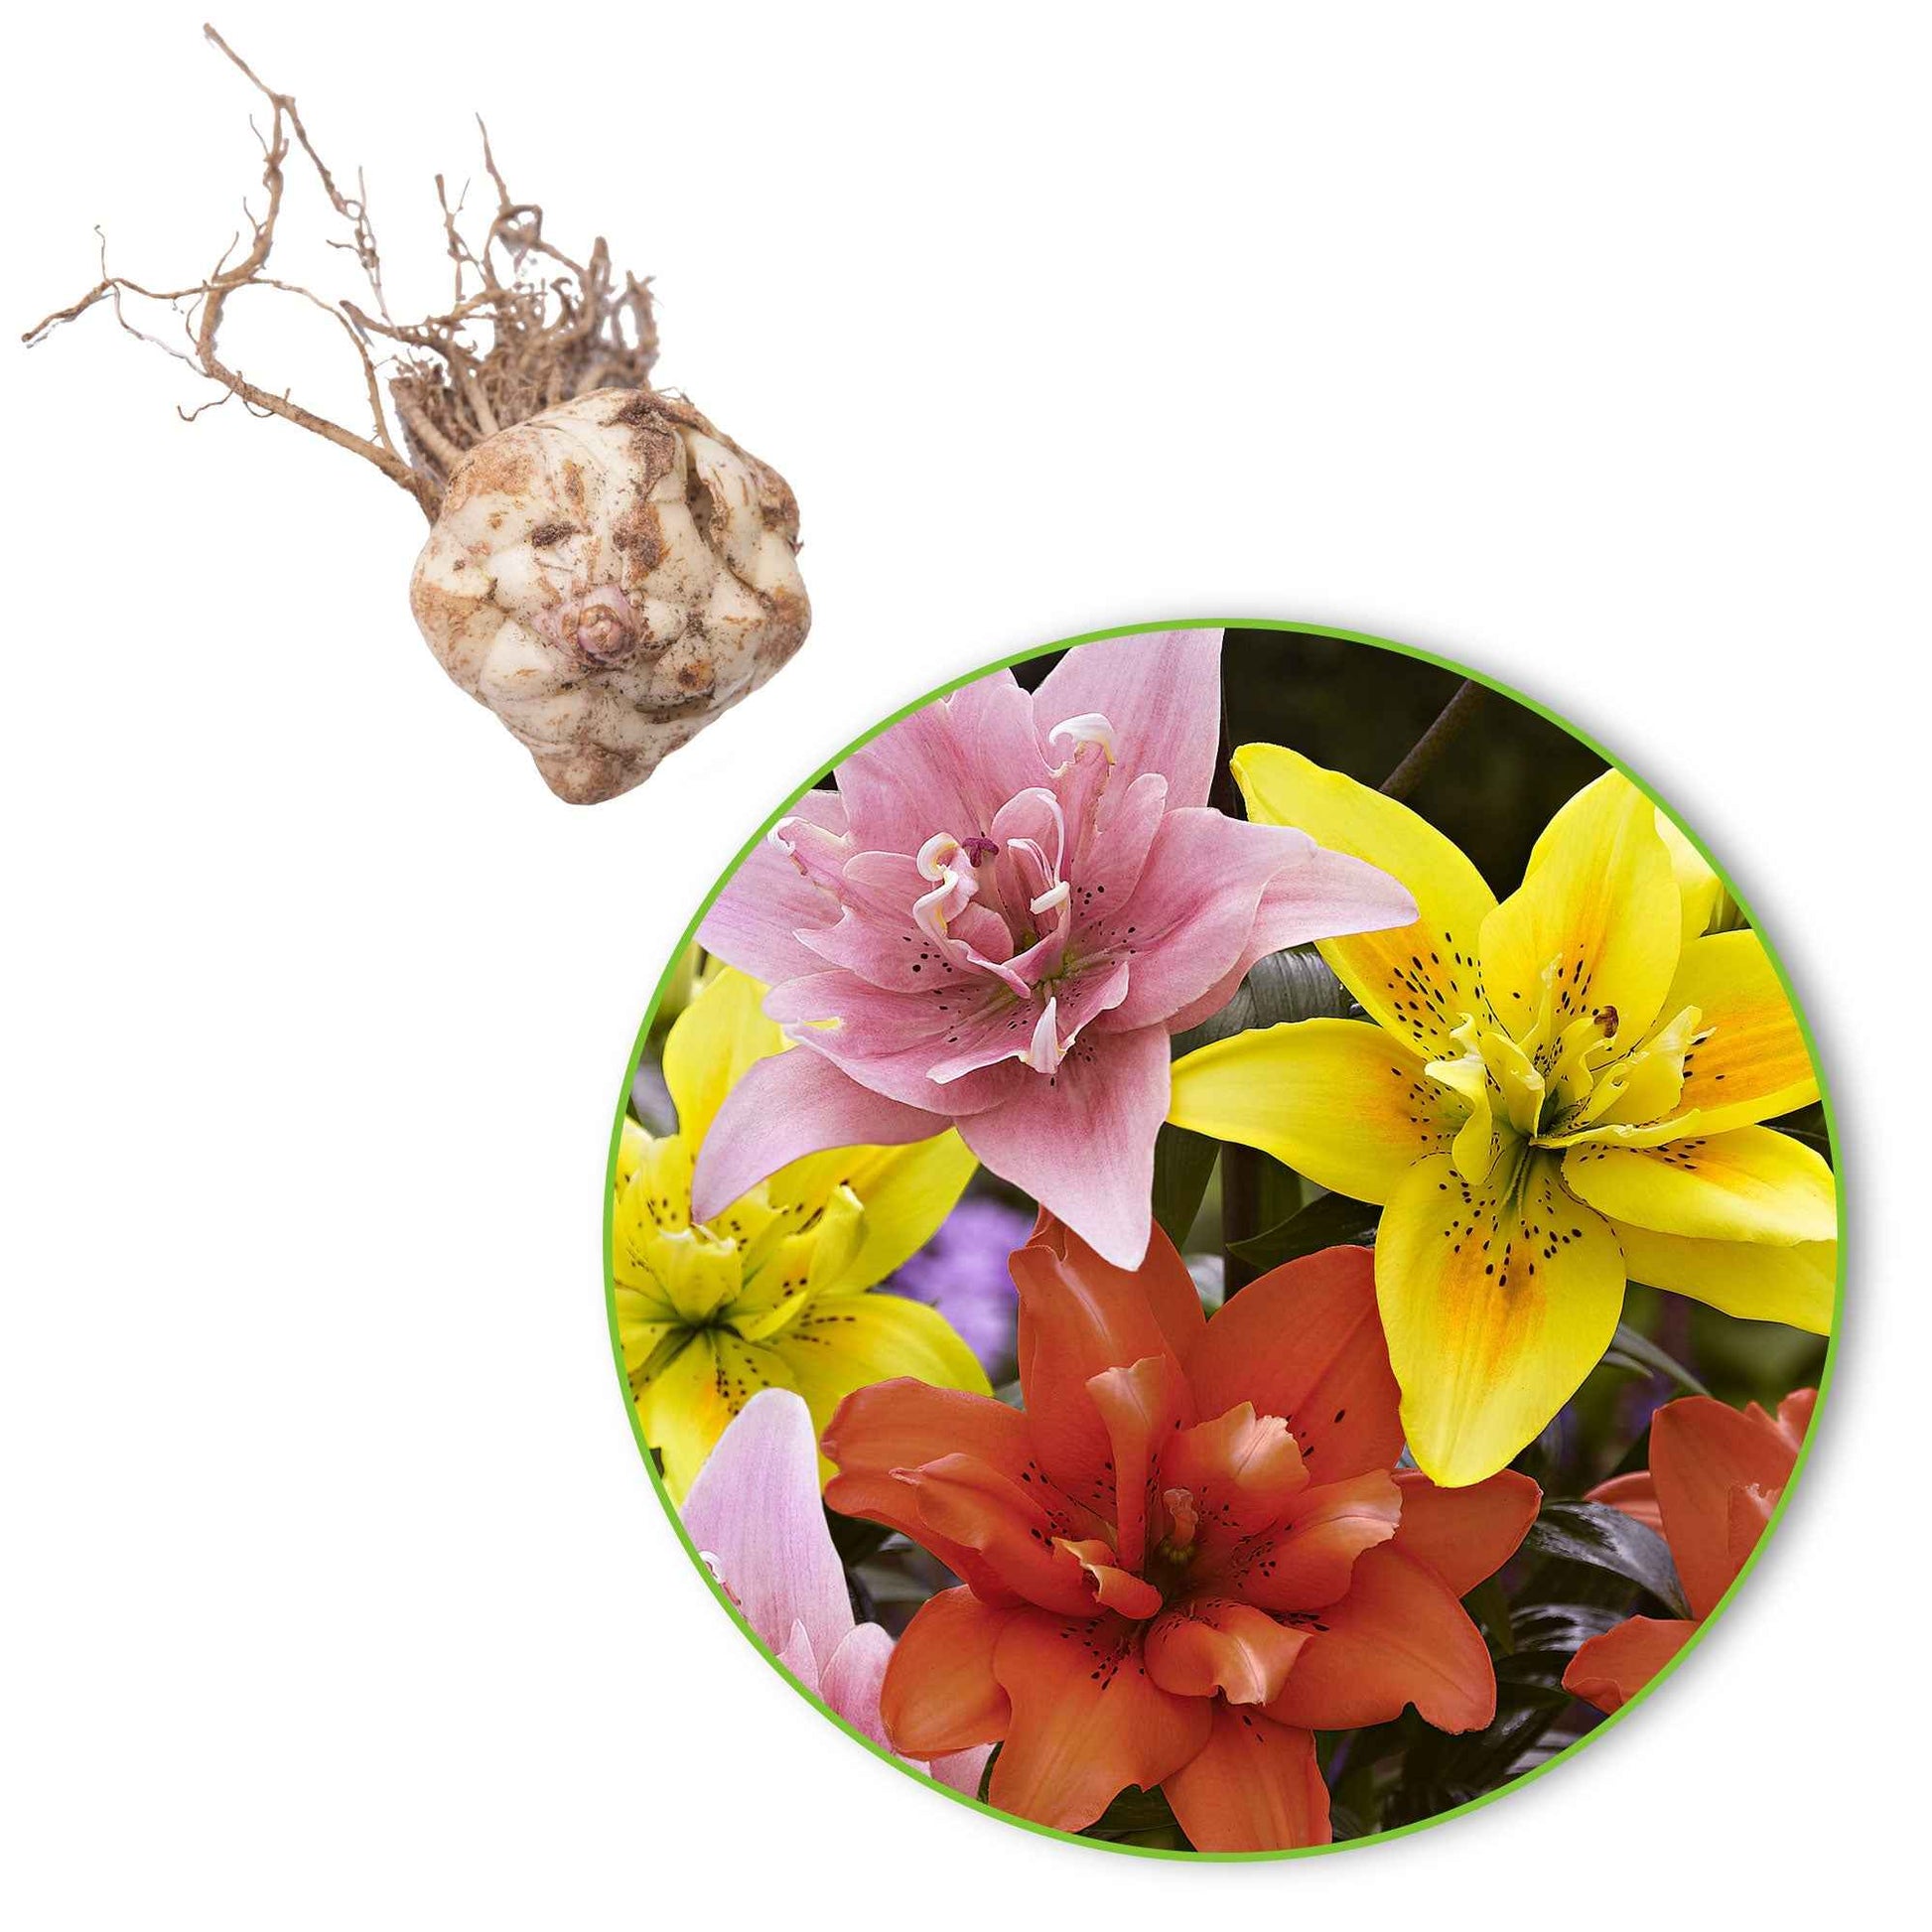 5x 0 Lys Lilium - Mélange 'Ultimate Touch' - Bulbes de fleurs populaires